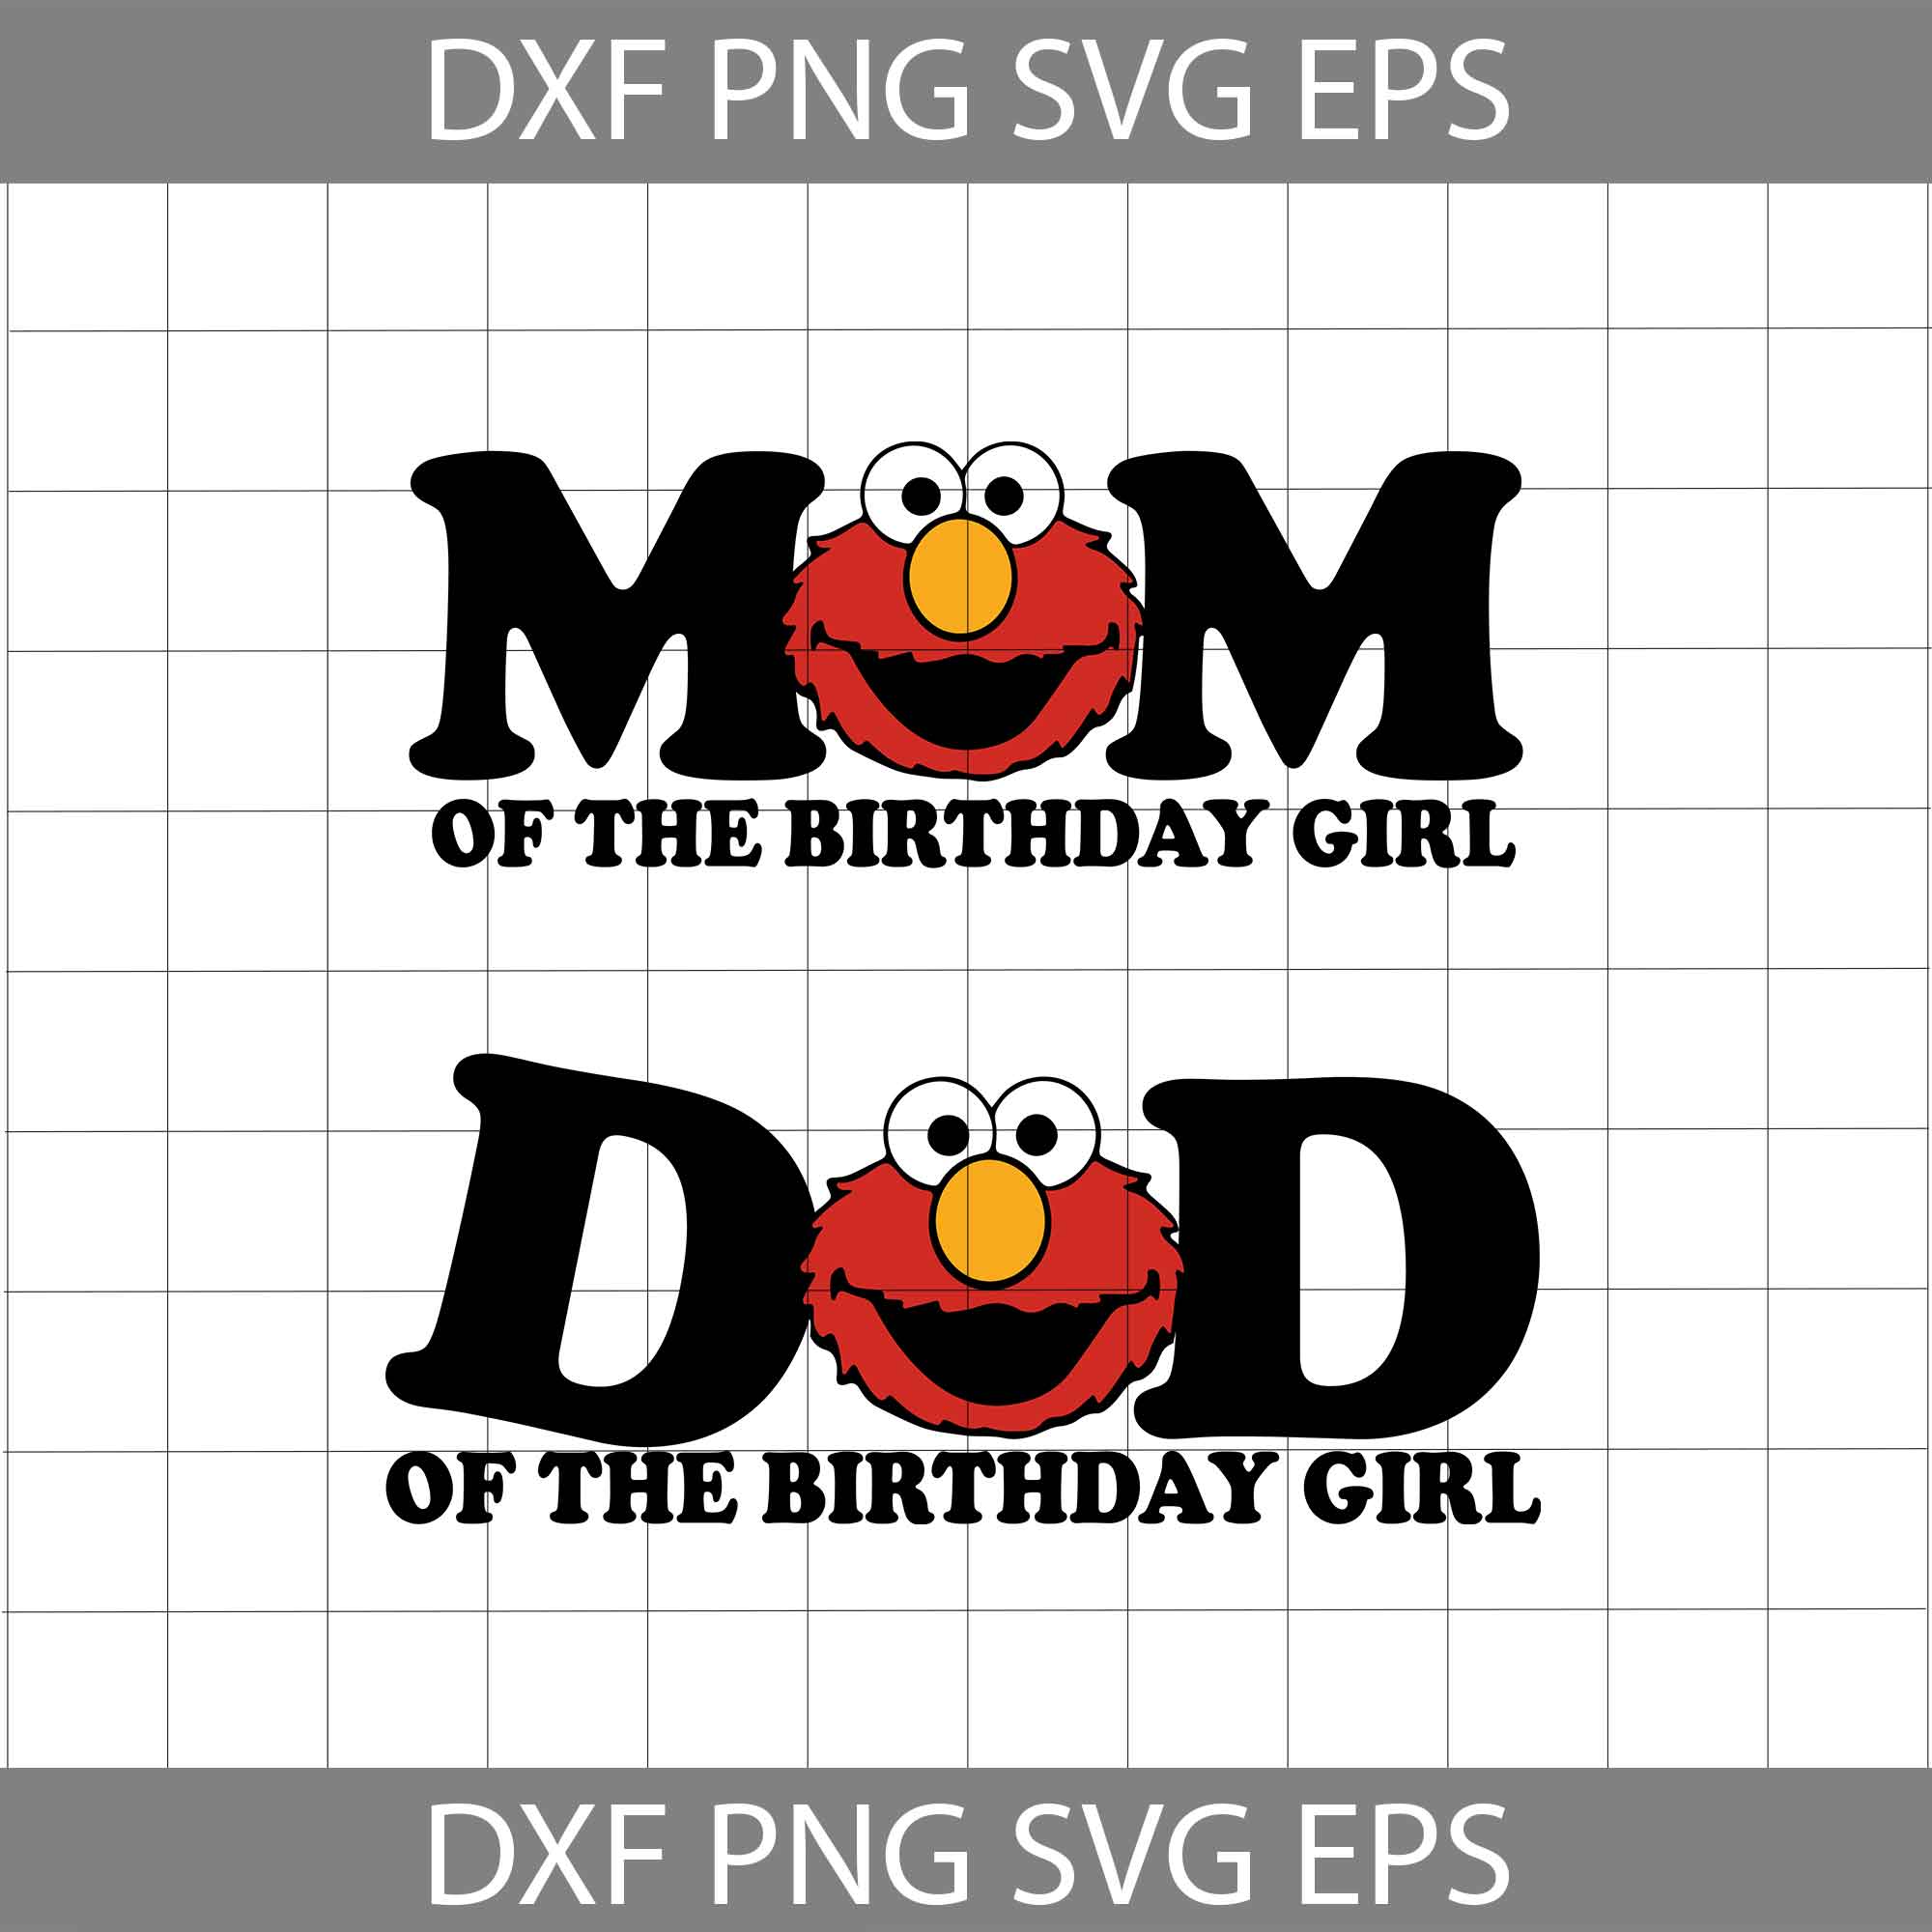 Sesame Street SVG, PNG, DXF